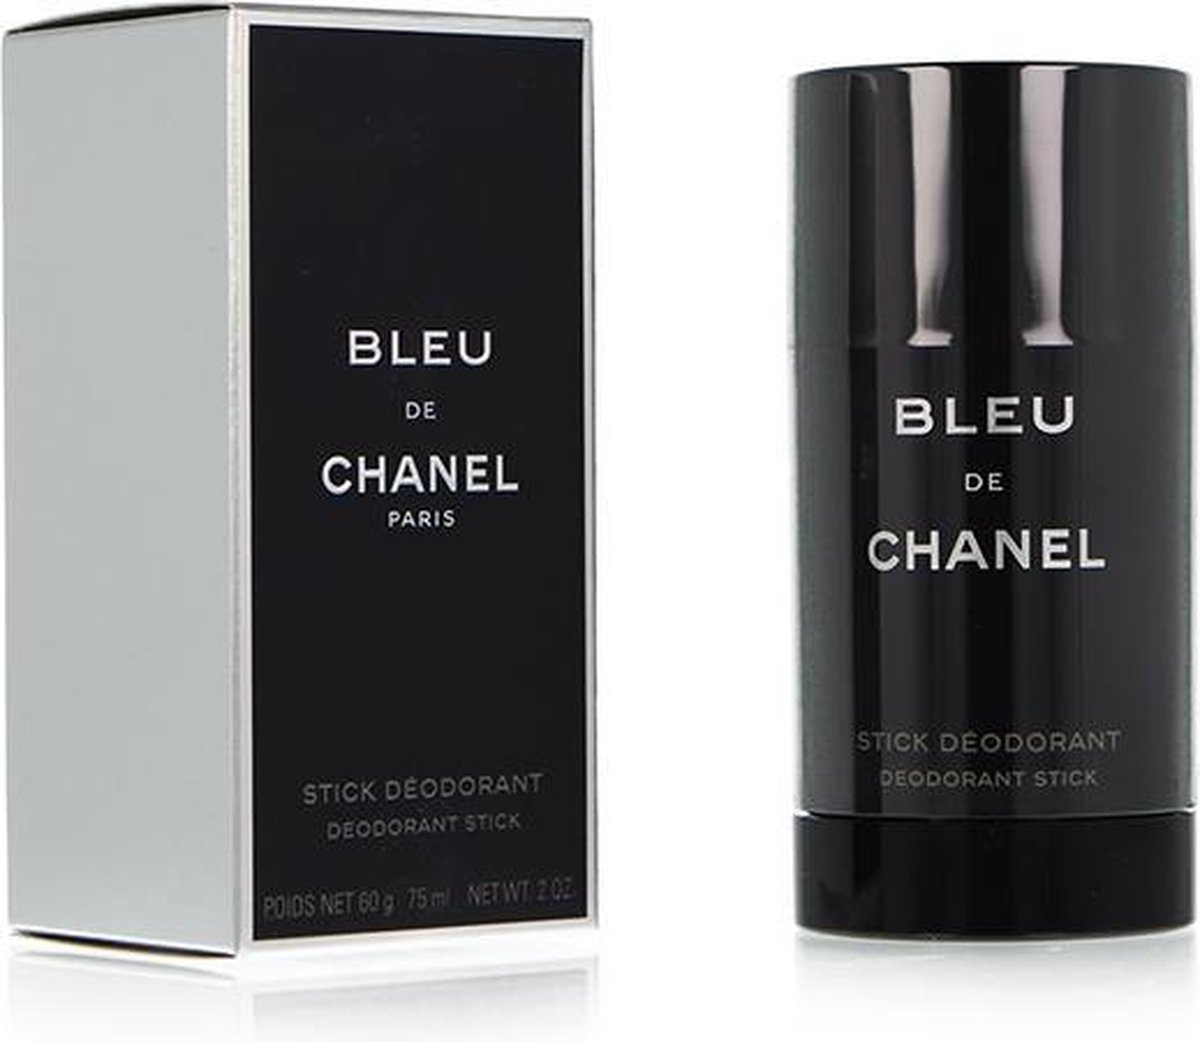 chanel bleu mens deodorant